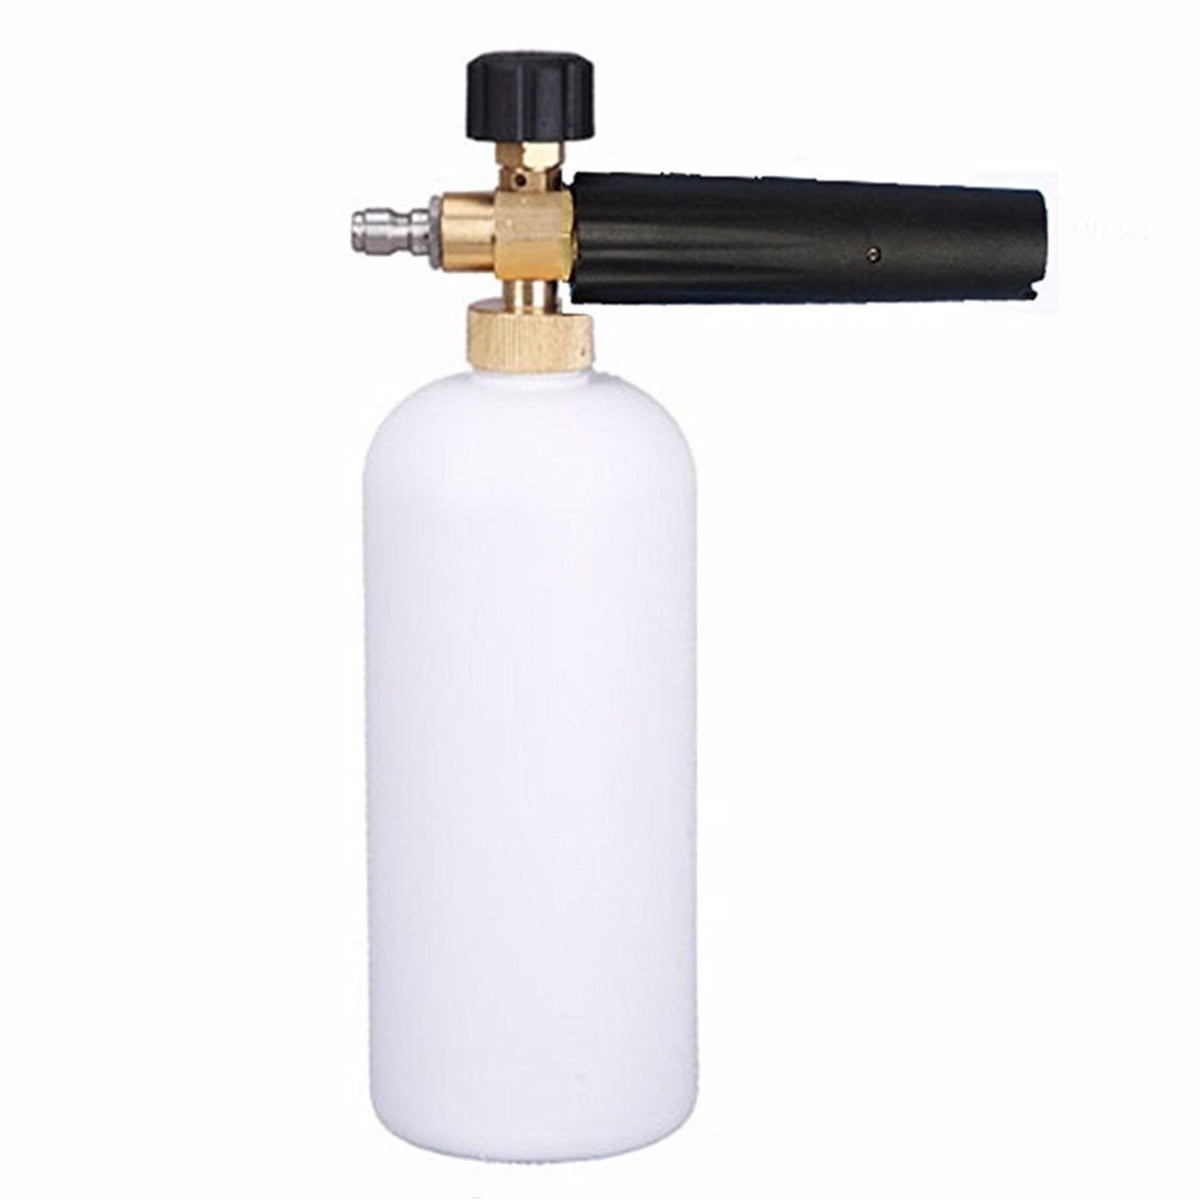 For Car Wash Adjustable Snow Foam Lance Washer Soap 1L Bottle Gun 1/4" F Inlet 